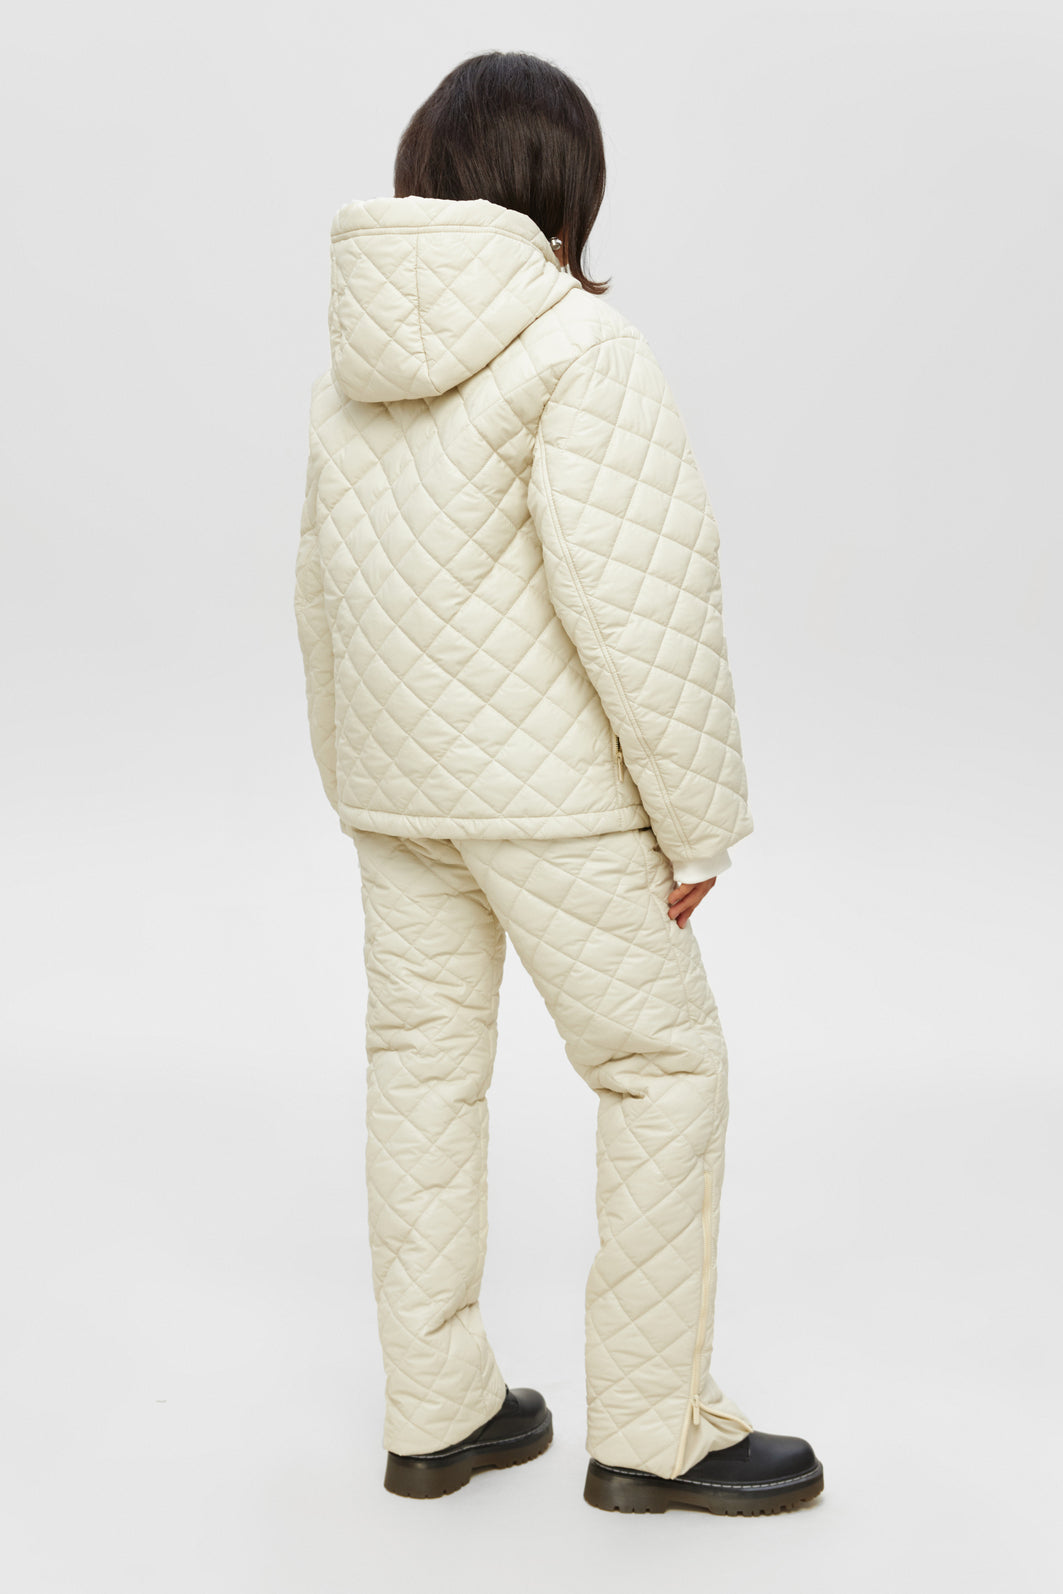 Ivory two piece snowsuit - ATLAS - Ivory ski suit - Women winter outwear